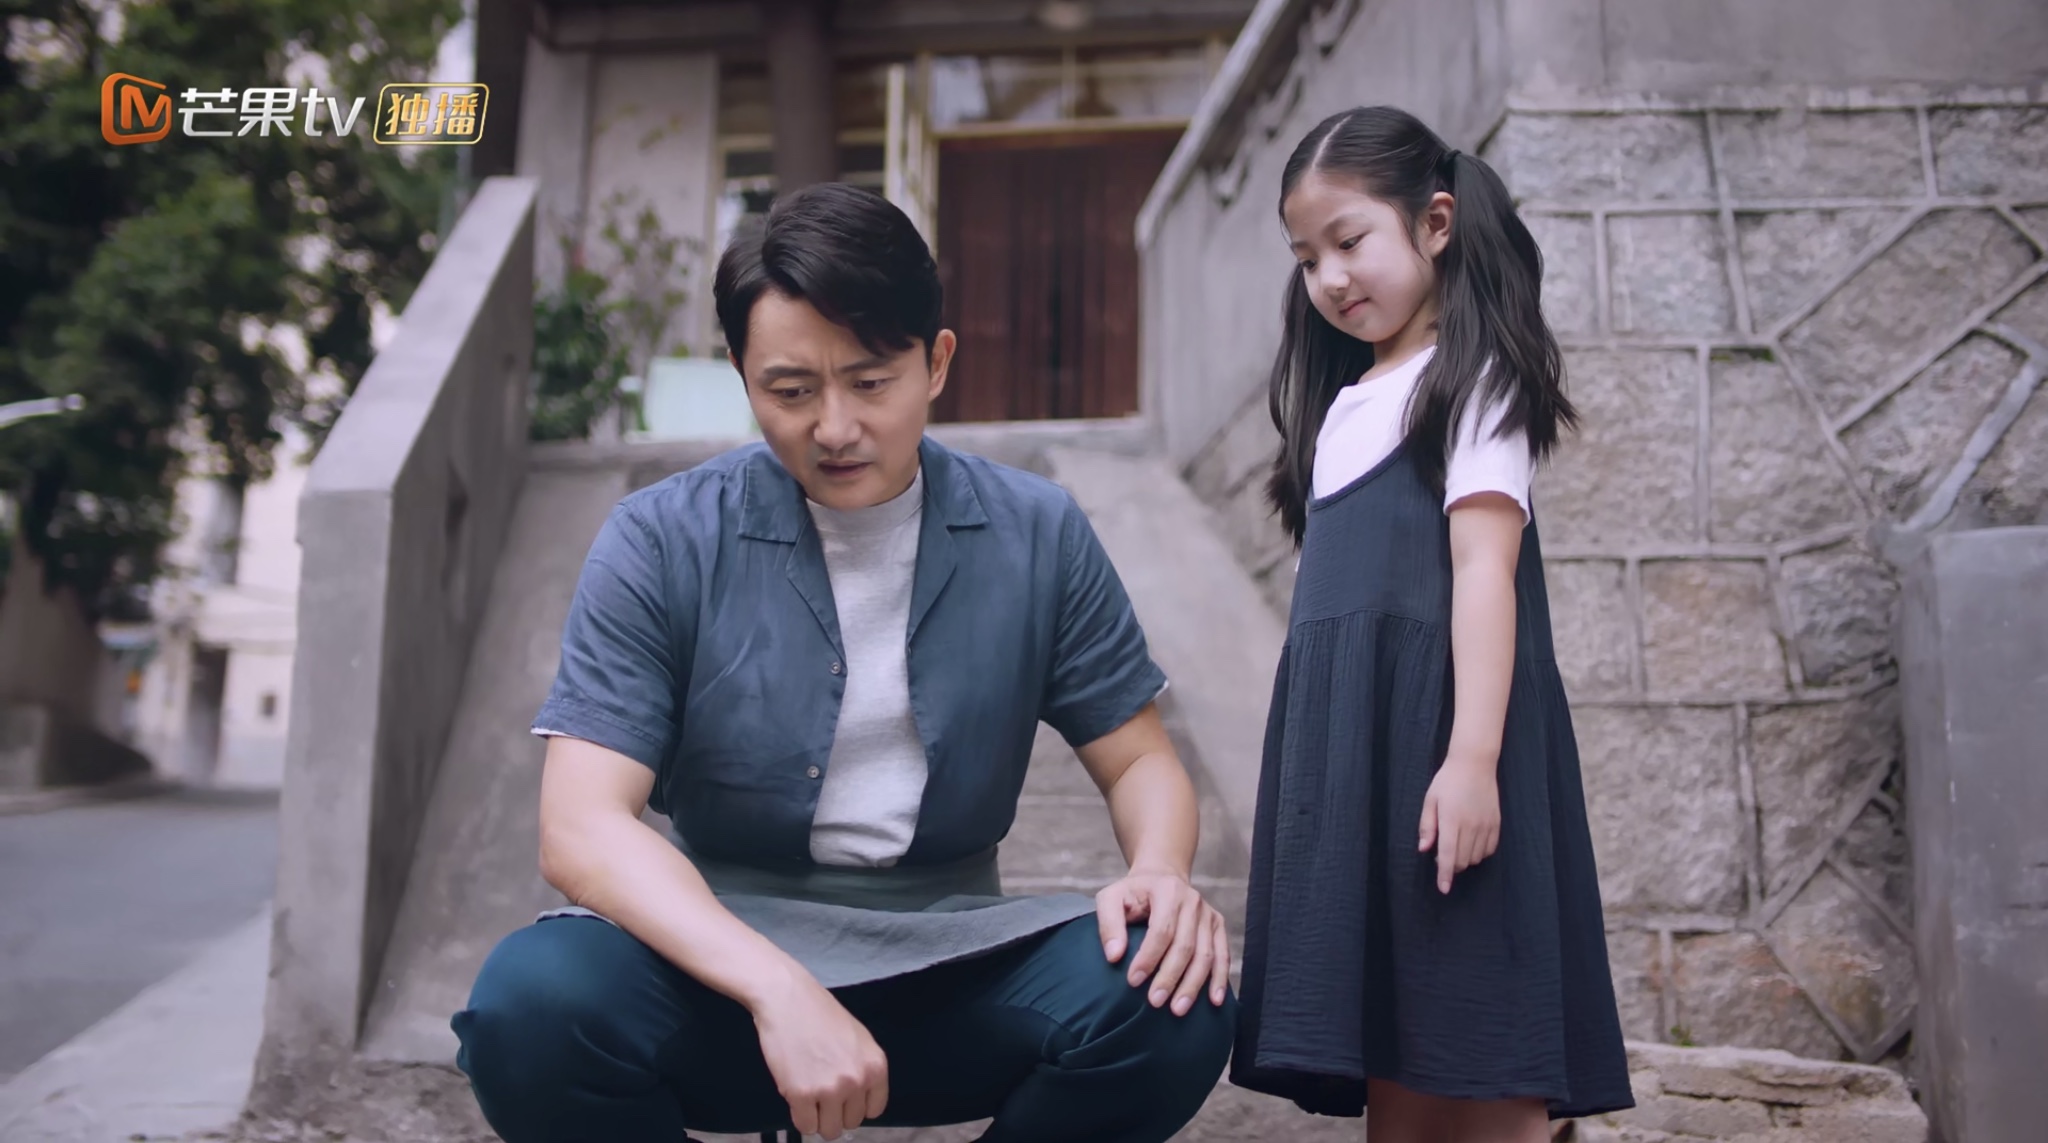 Yi jia ren zhi ming: Folge #1.1 | Season 1 | Episode 1